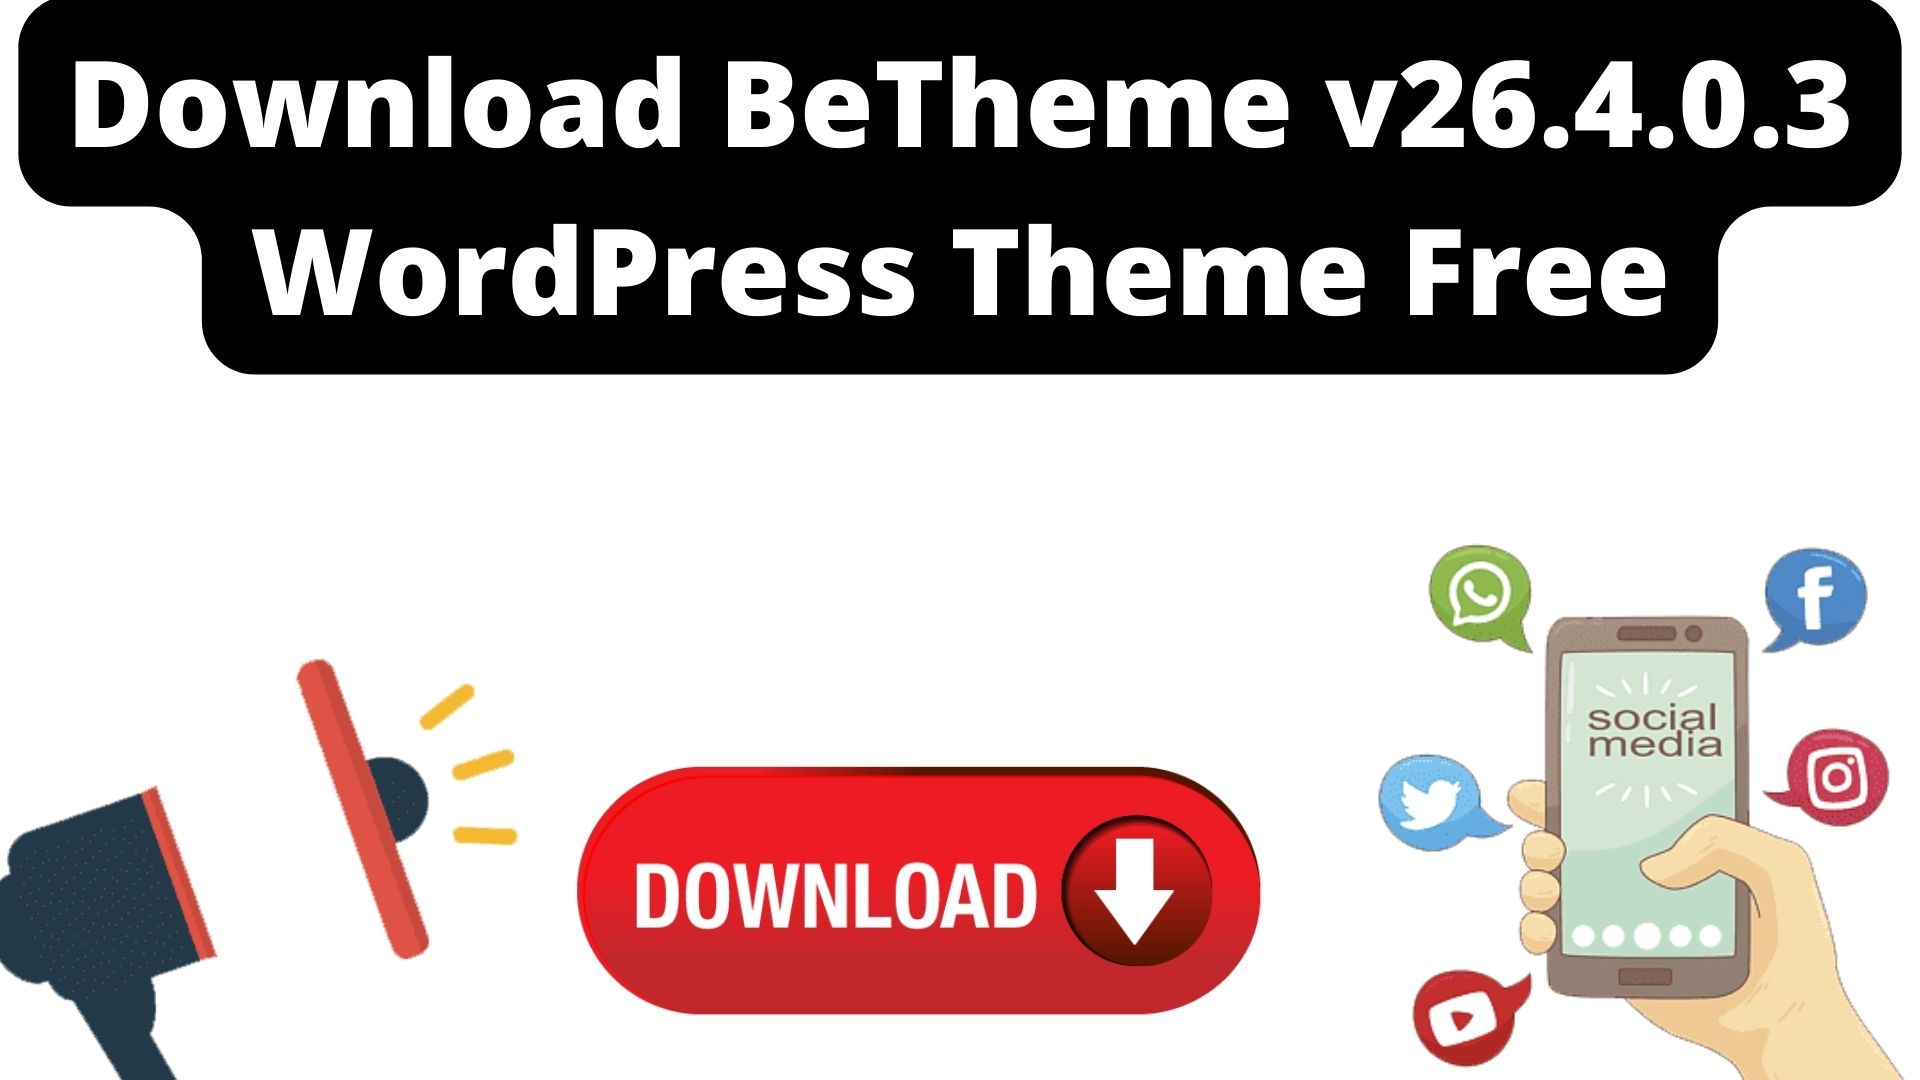 Download betheme v26. 4. 0. 3 wordpress theme free